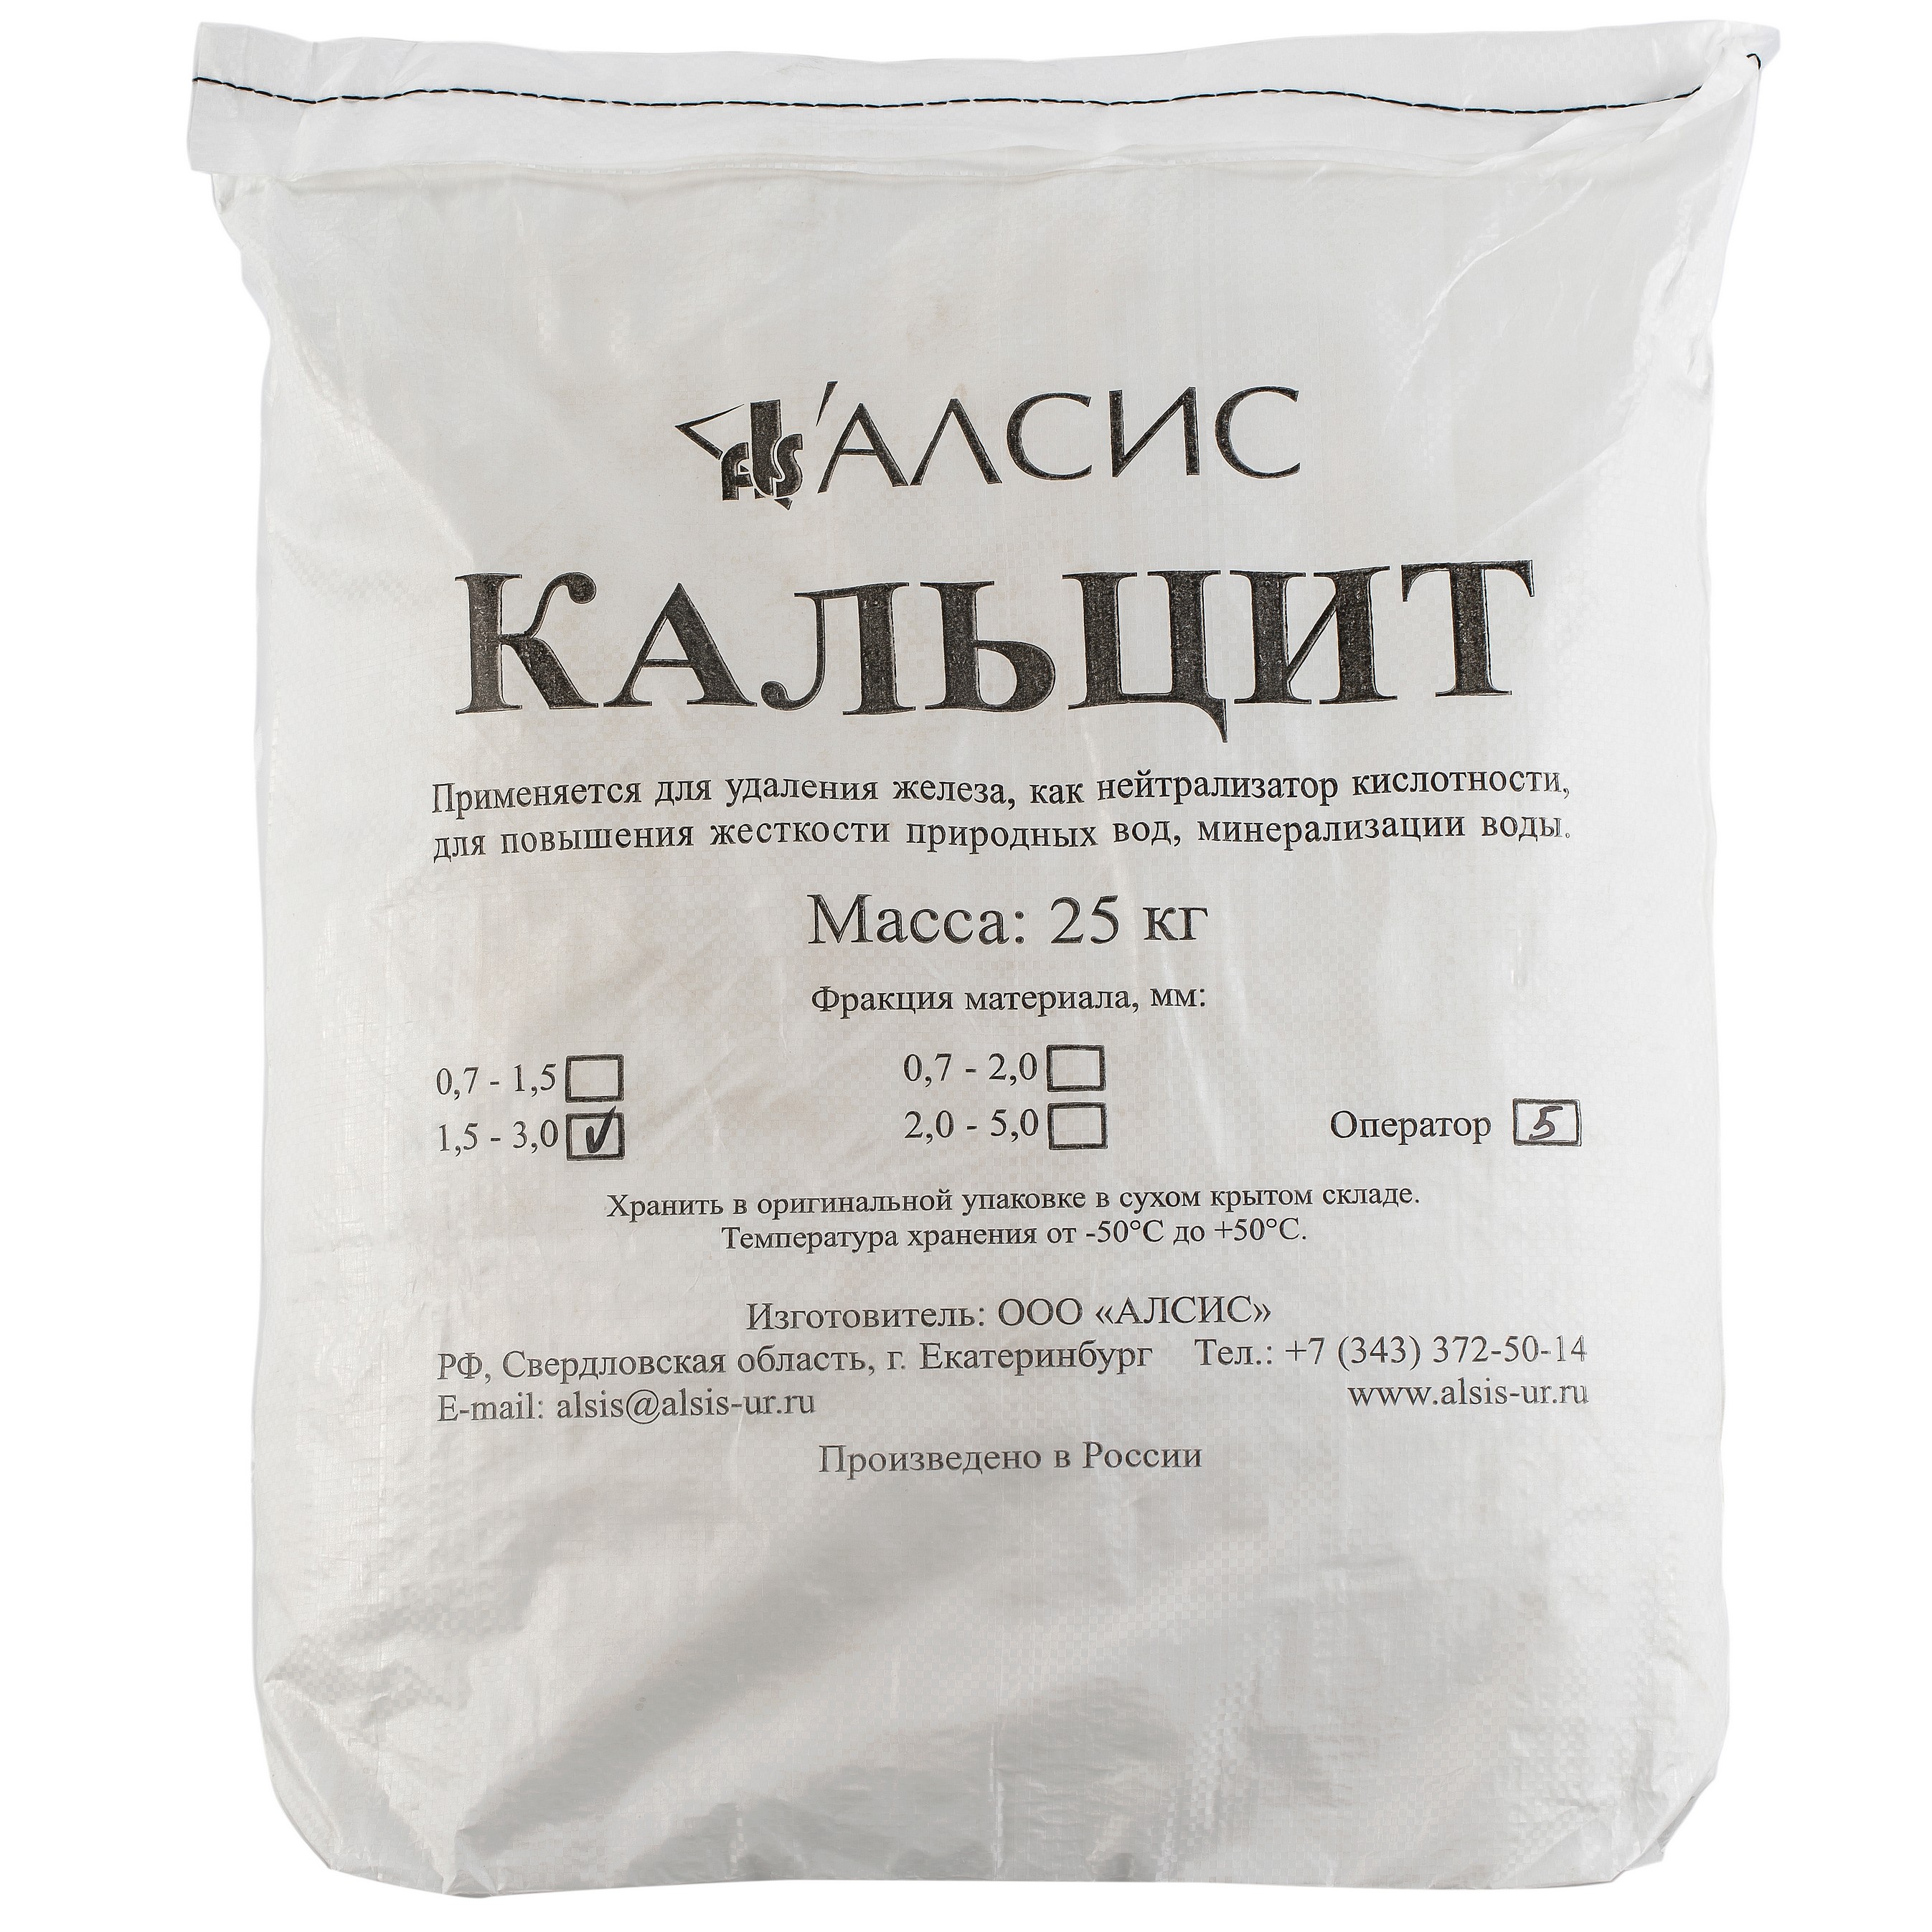 Купить Кальцит (фр.1,5-3,0 мм) 25 кг по выгодной цене в официальноминтернет-магазине «Гейзер»